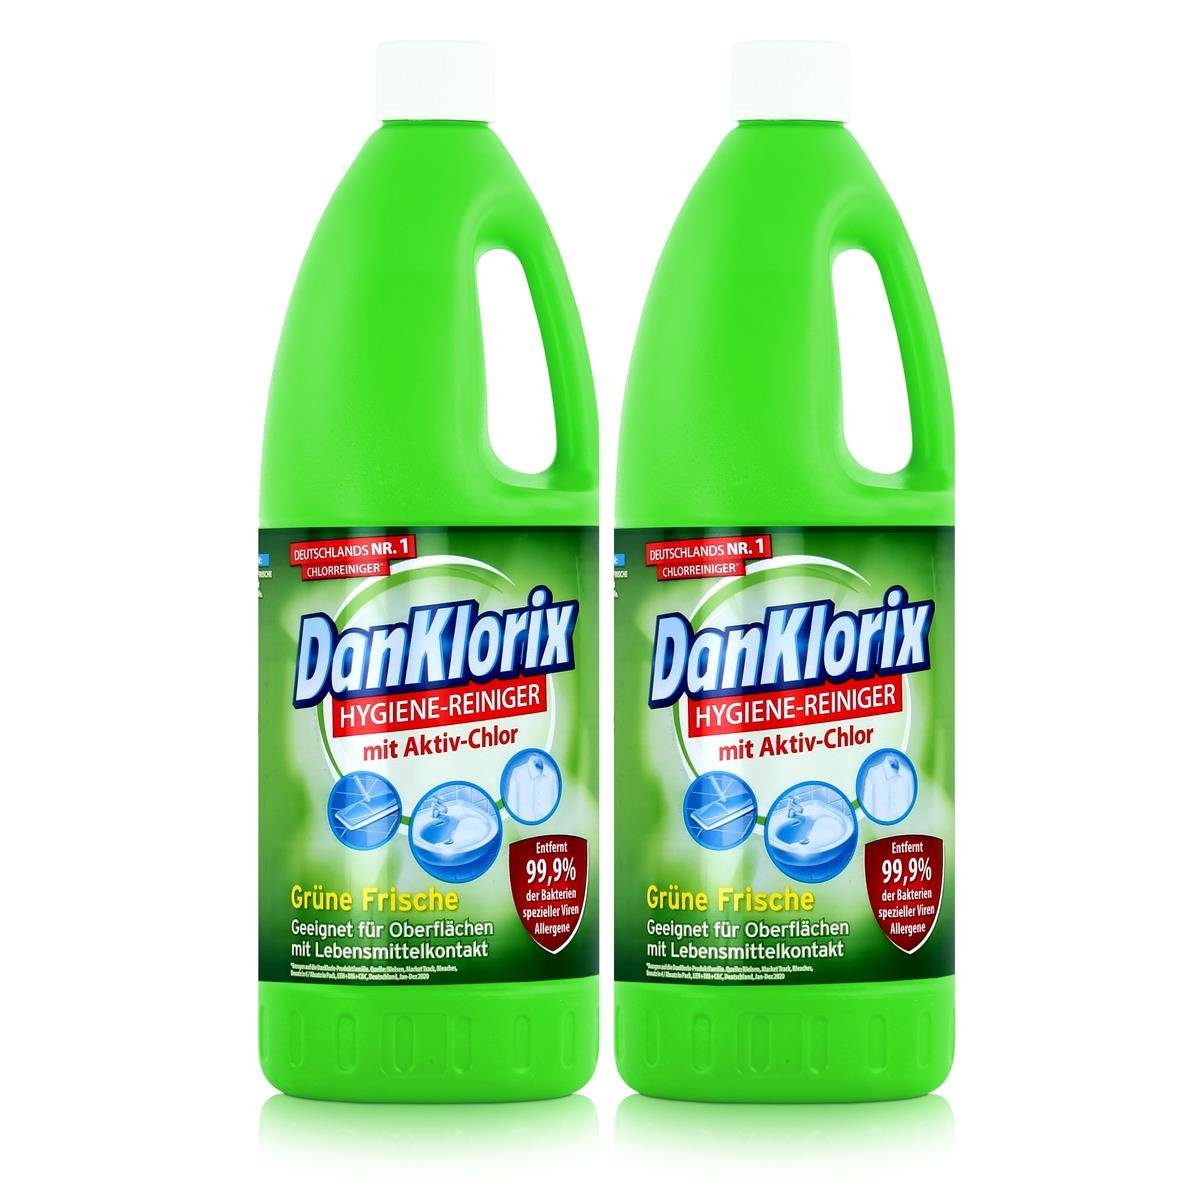 DanKlorix DanKlorix Hygiene-Reiniger Grüne Frische 1,5L – Mit Aktiv-Chlor (2er P Allzweckreiniger